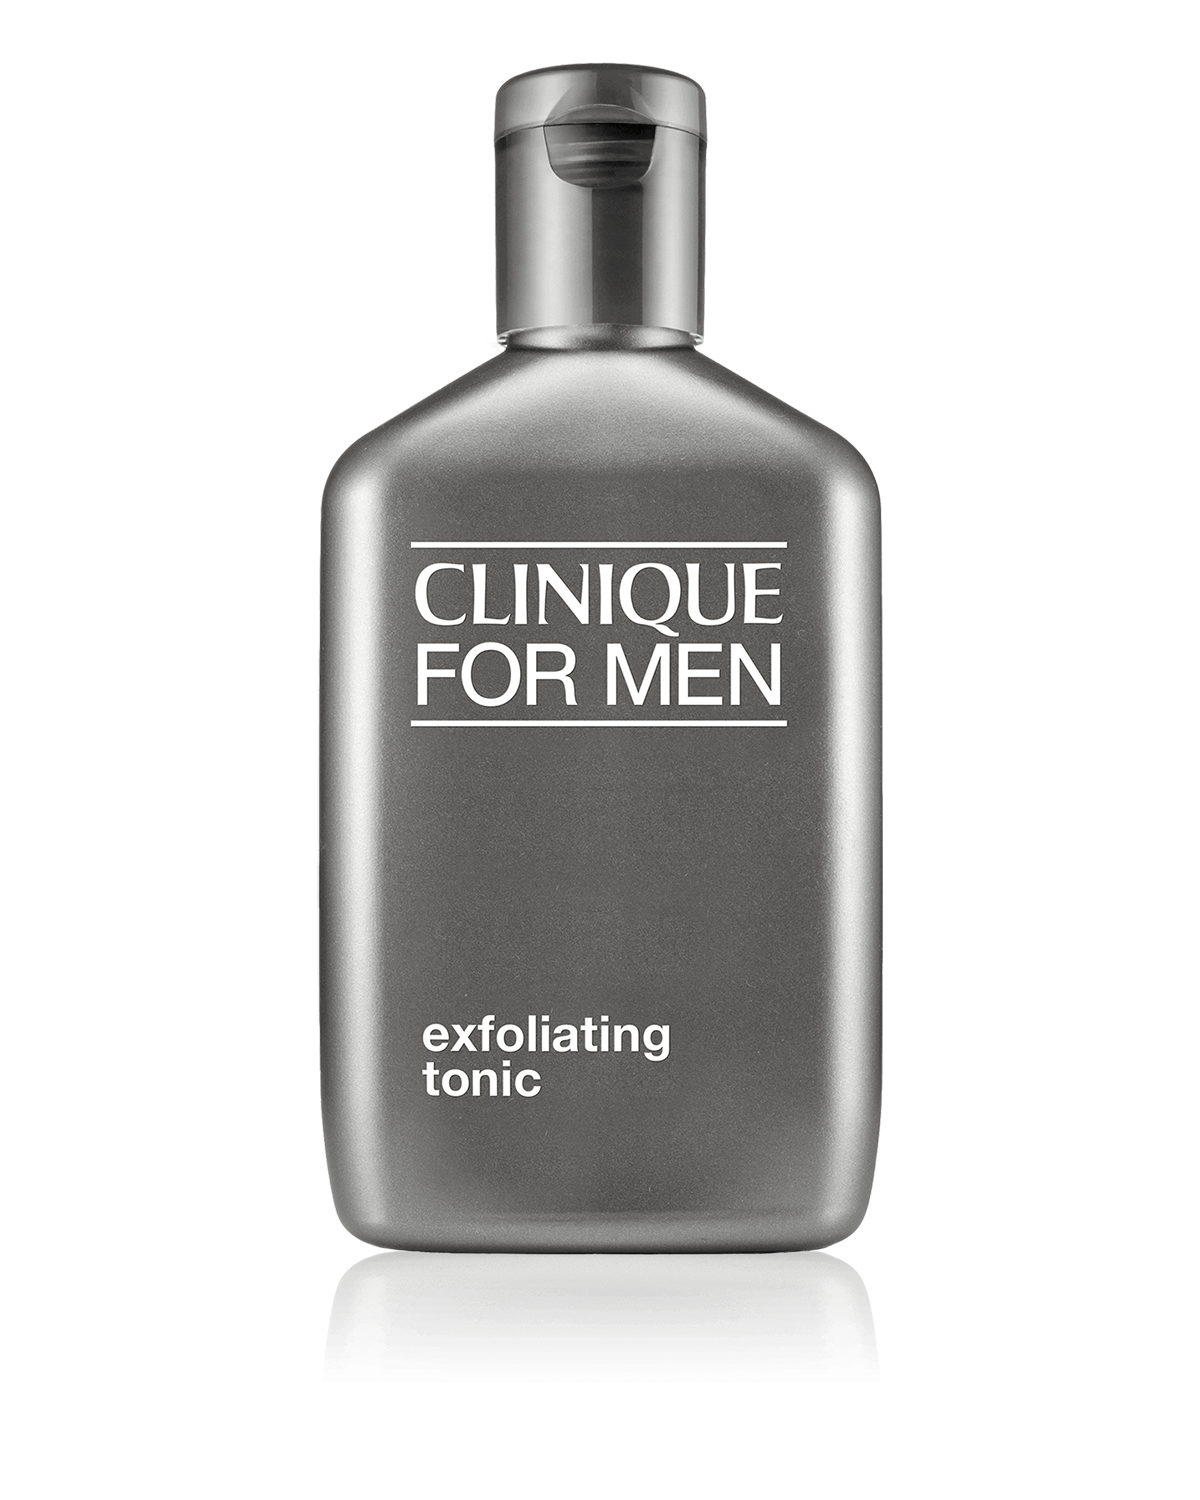 Clinique For Men™ Exfoliating Tonic